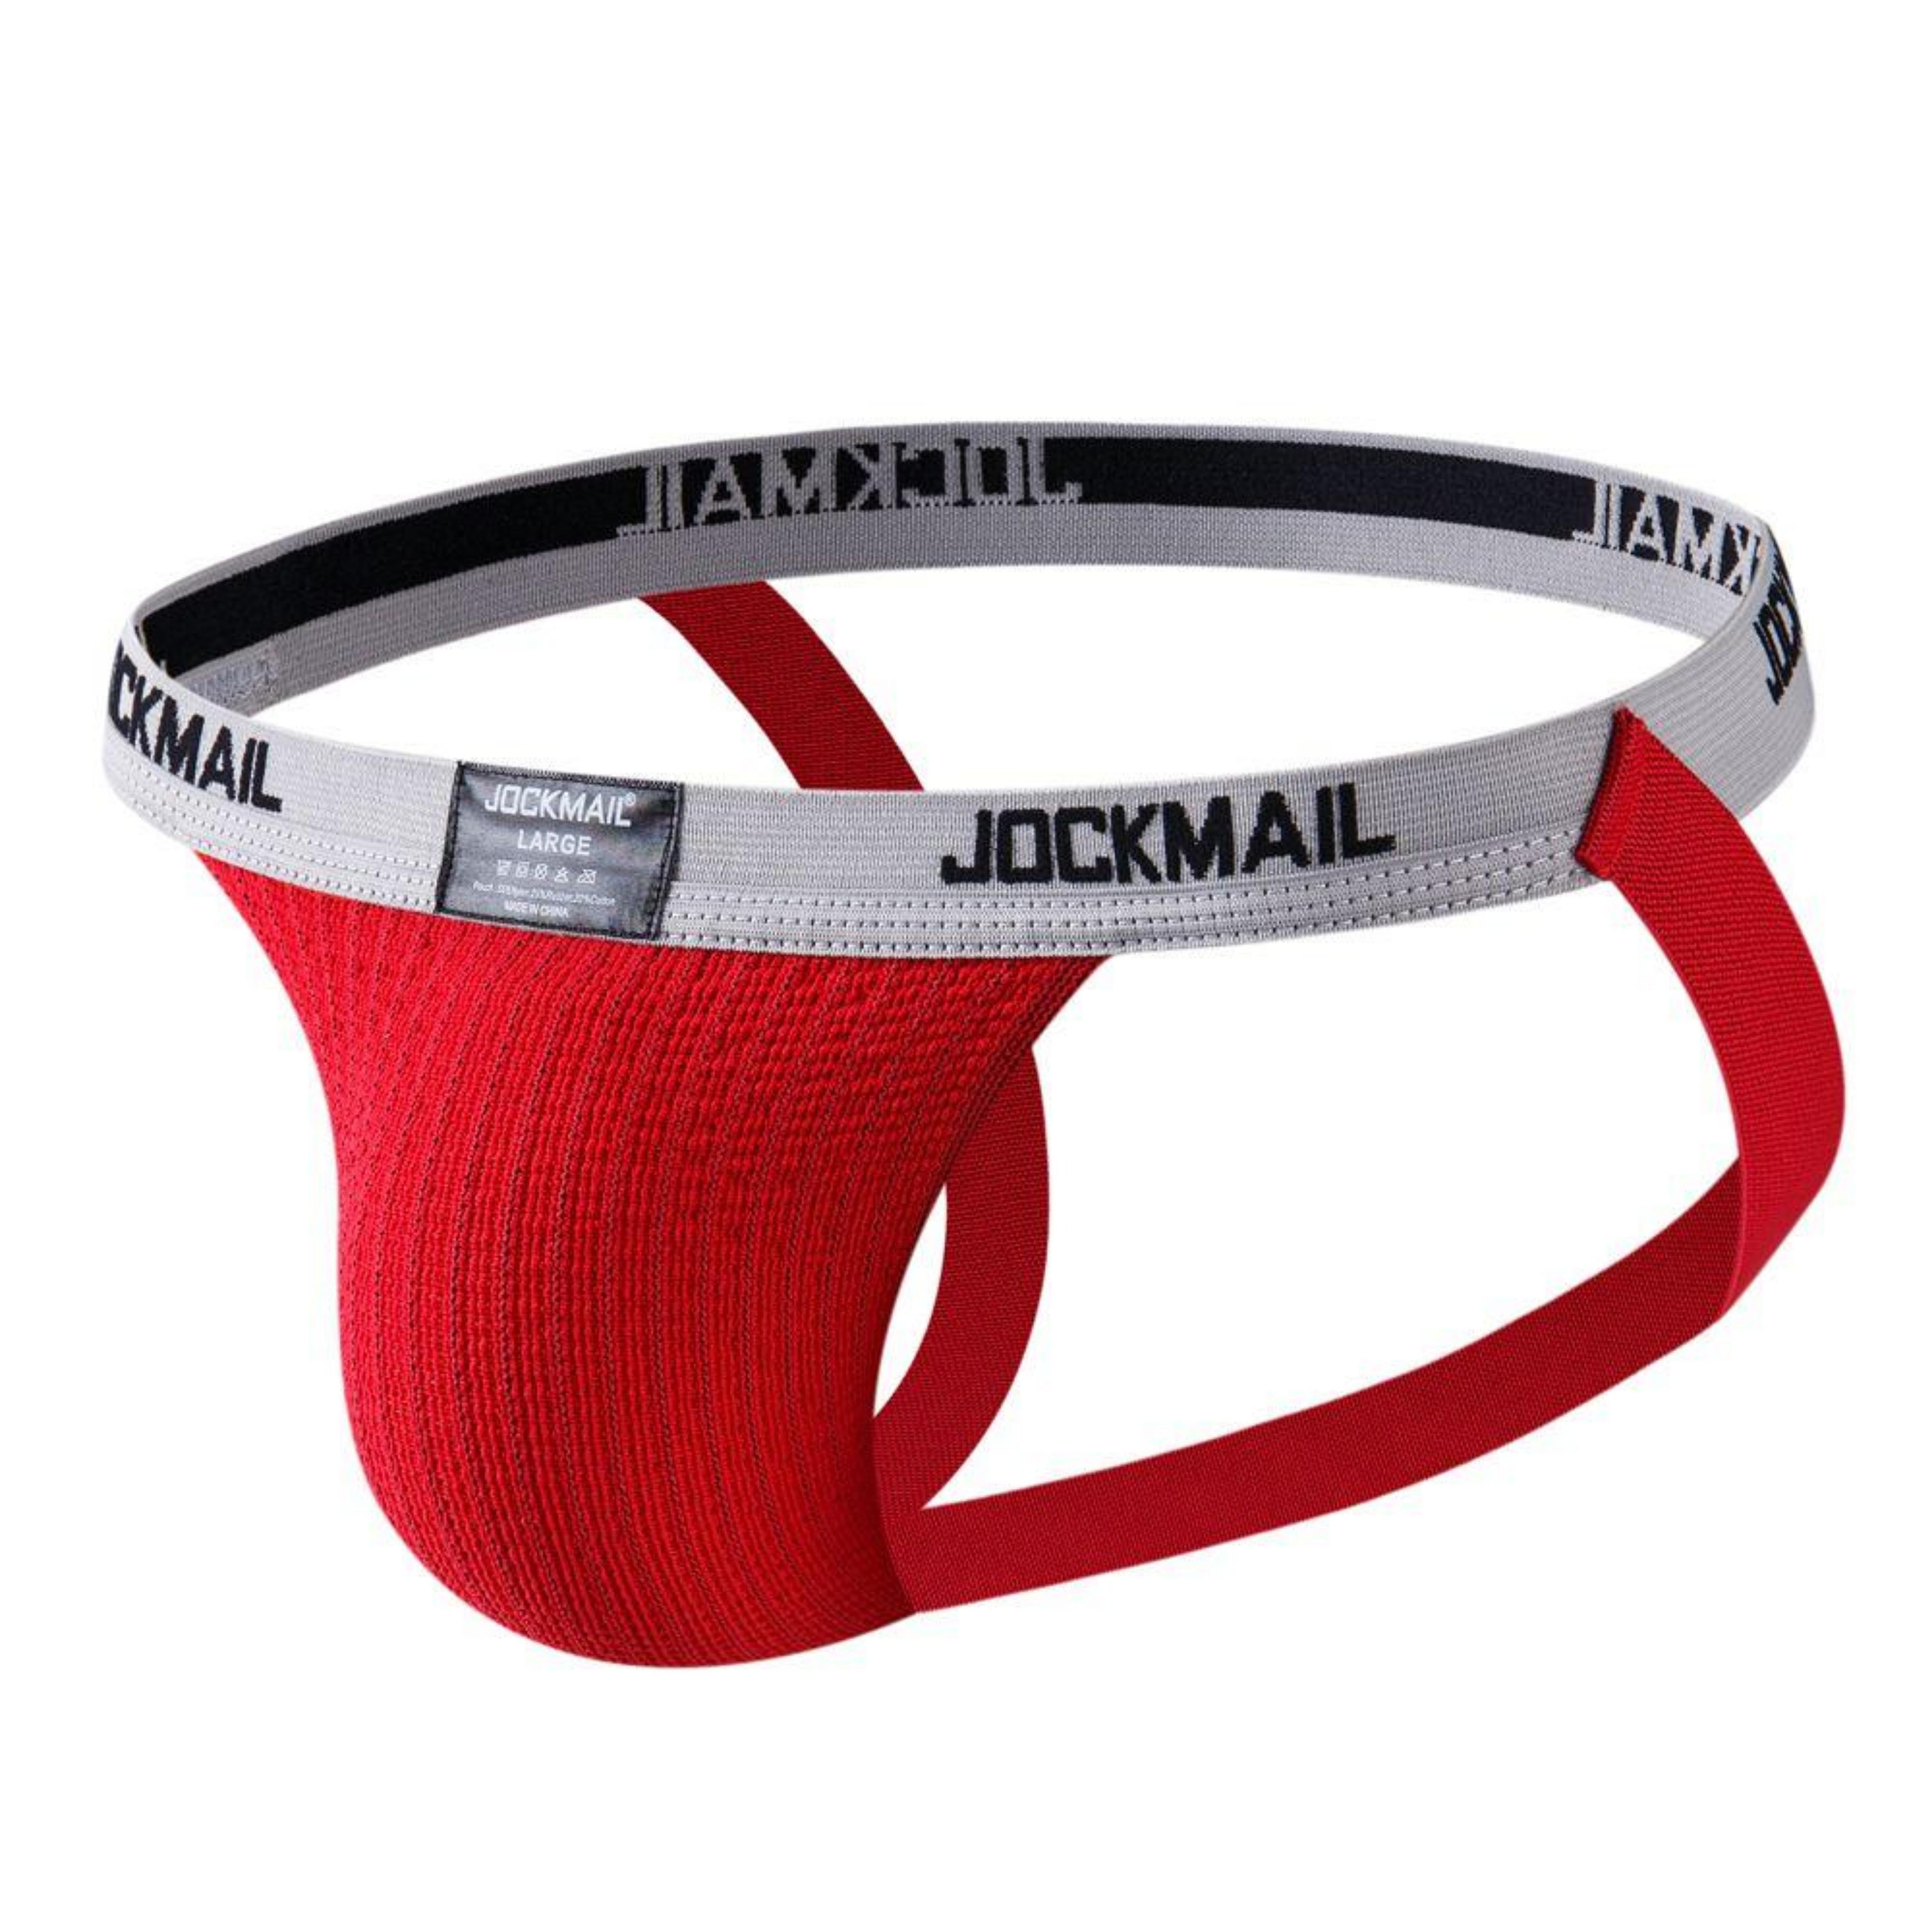 Men's JOCKMAIL JM229 - Old School Classic Jockstrap - JOCKMAIL